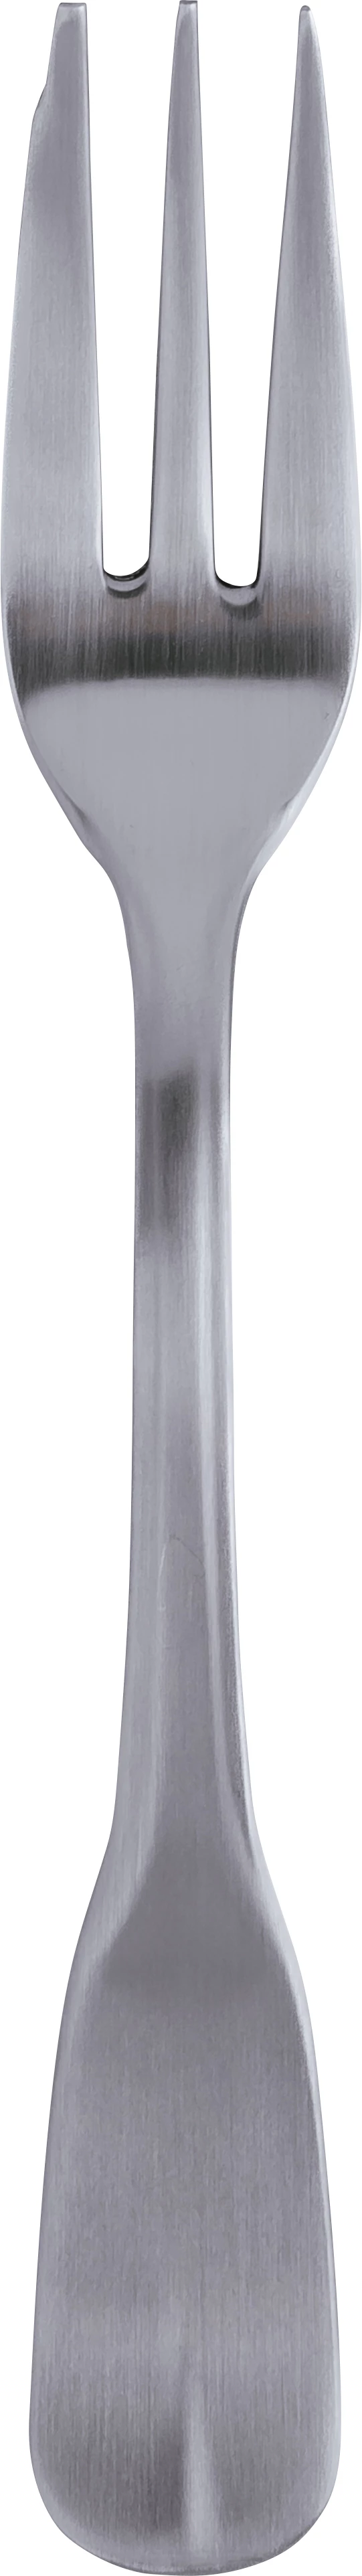 Dalper D' Avila kagegaffel, 15 cm